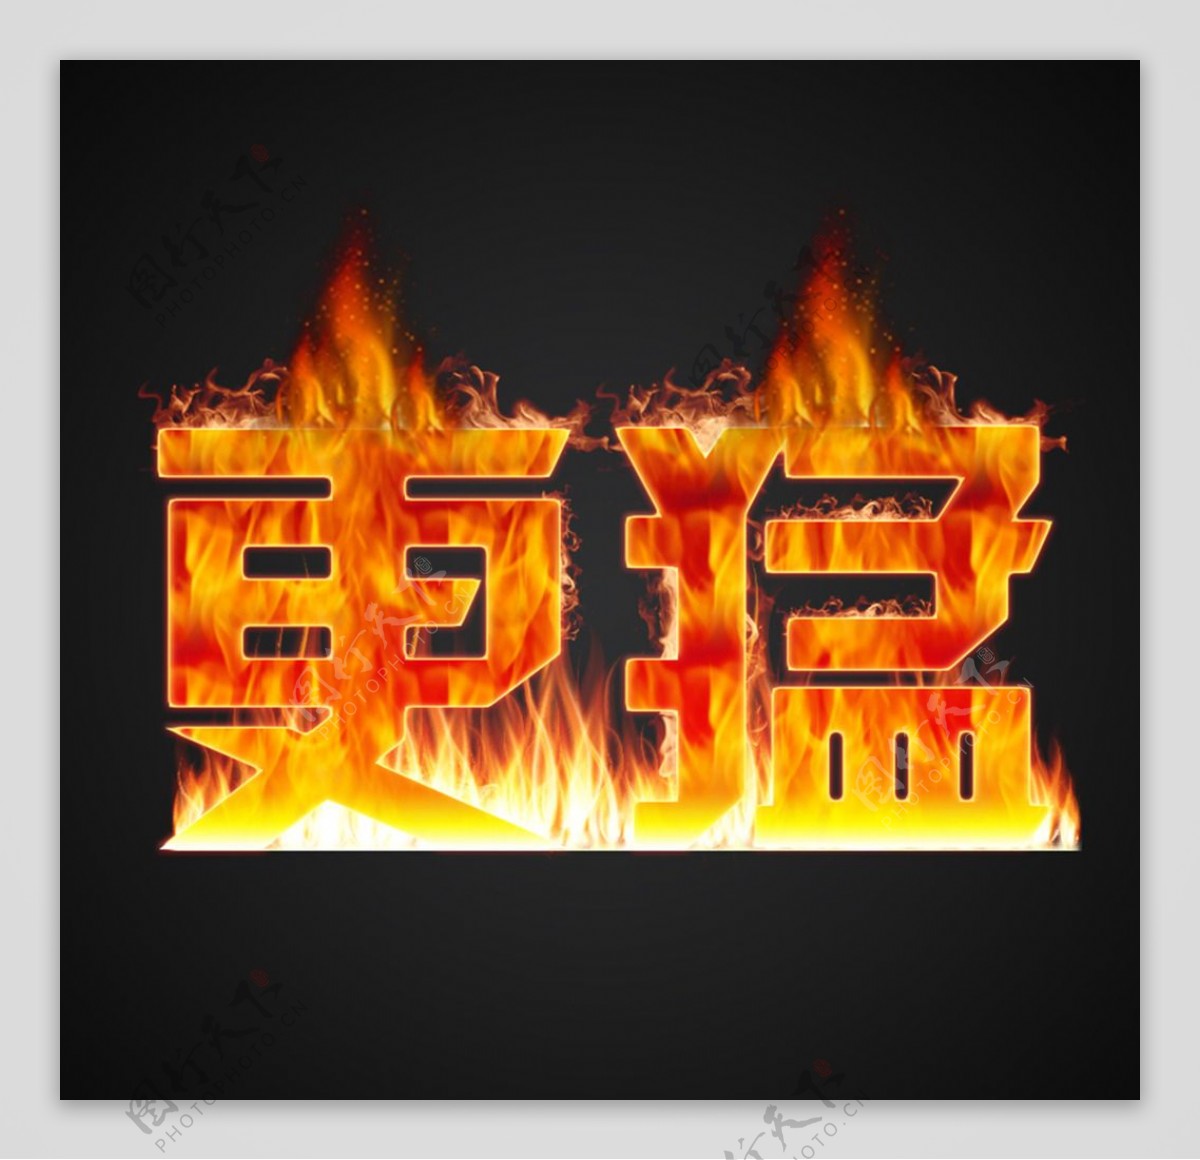 超过 200 张关于“Hd Fire”和“火”的免费图片 - Pixabay